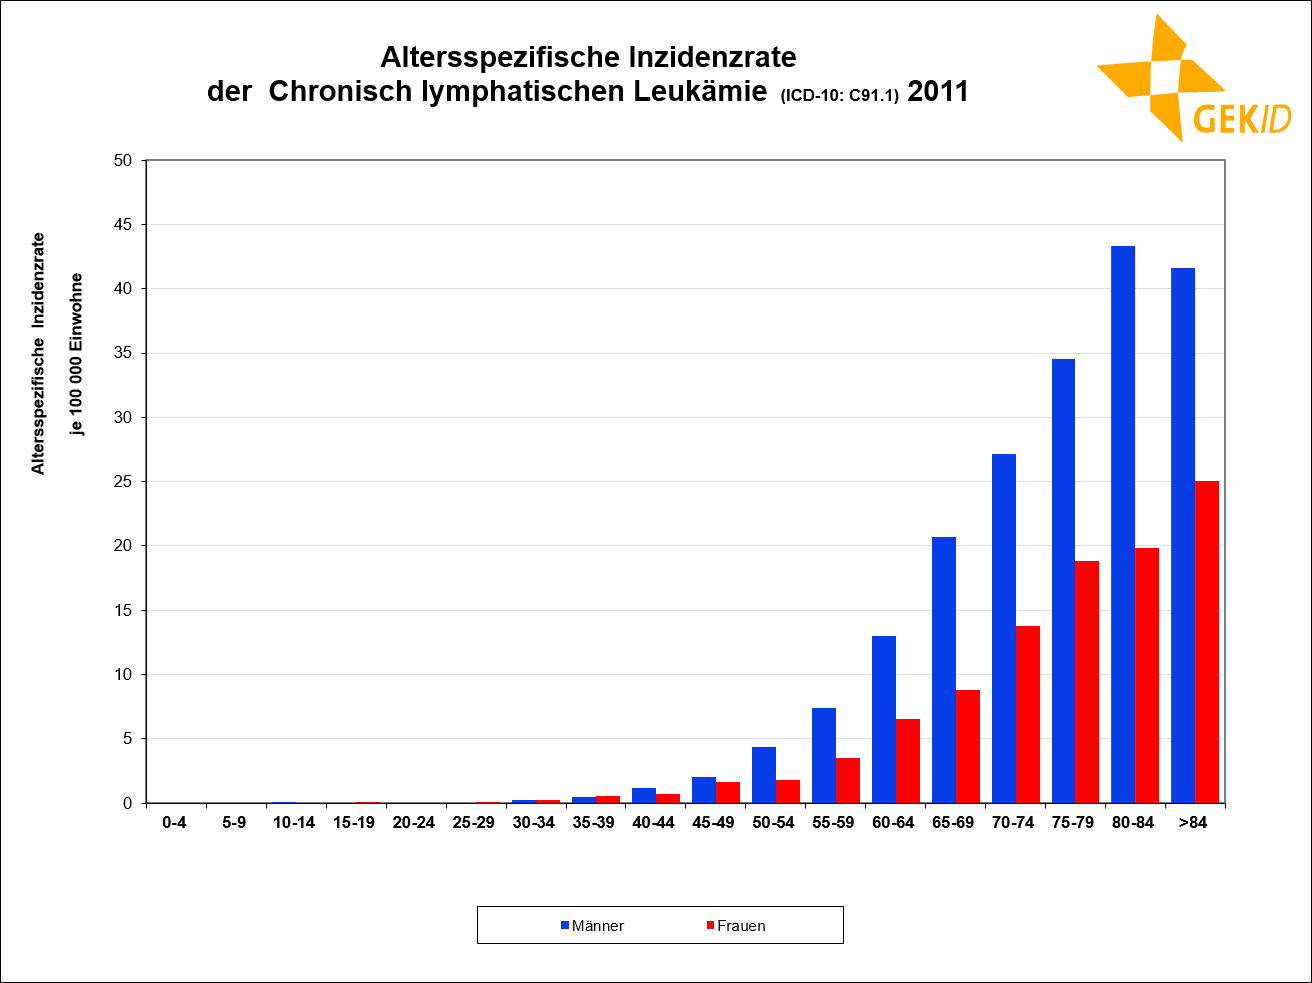 Altersspezifische Inzidenzrate der CLL in Deutschland (Hochrechnung)